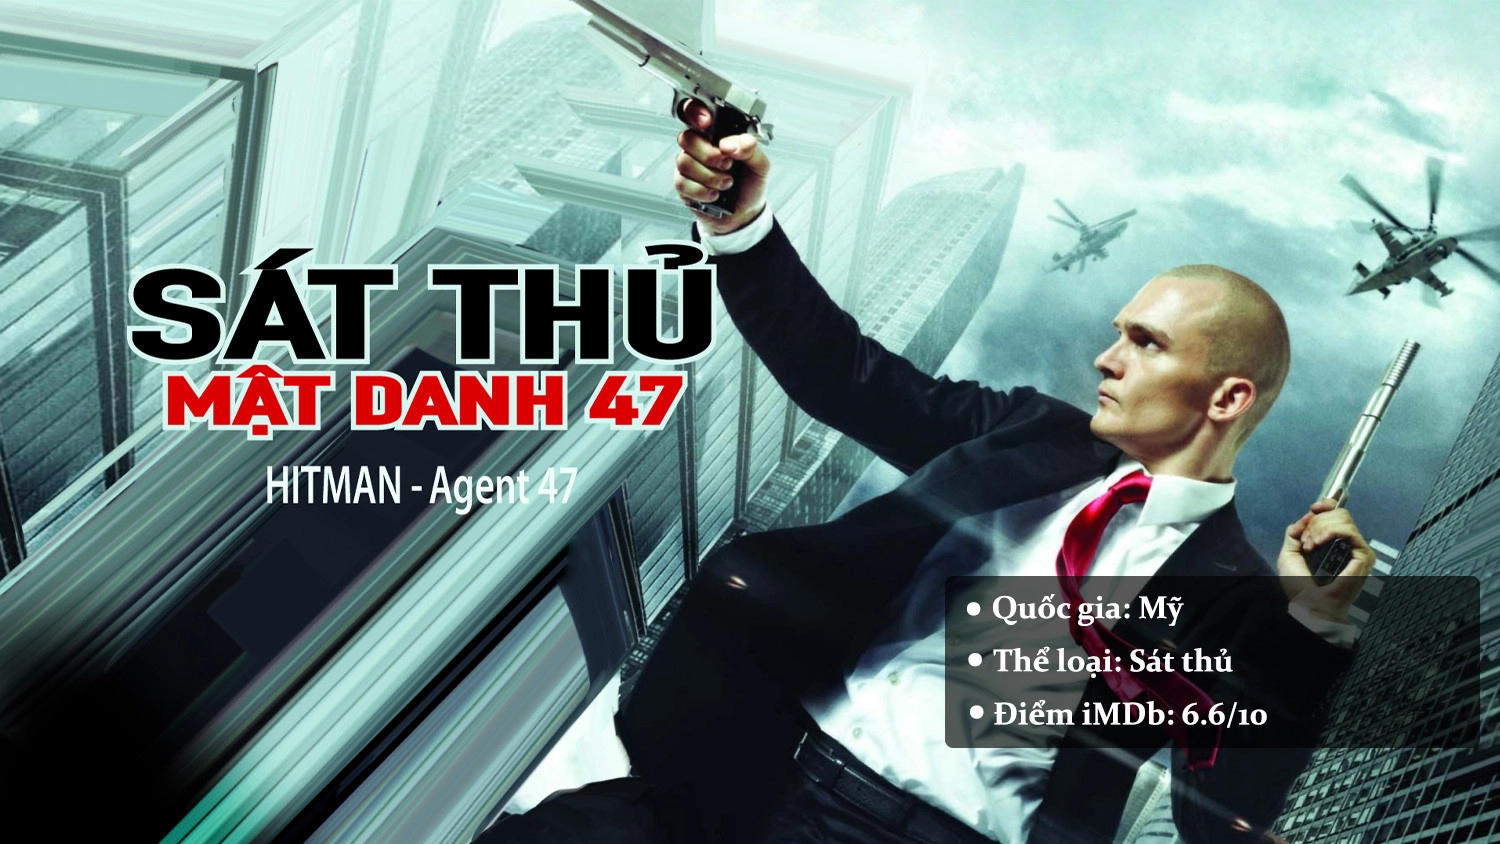 Hitman Agent 47 - Sát Thủ Mật Danh 47